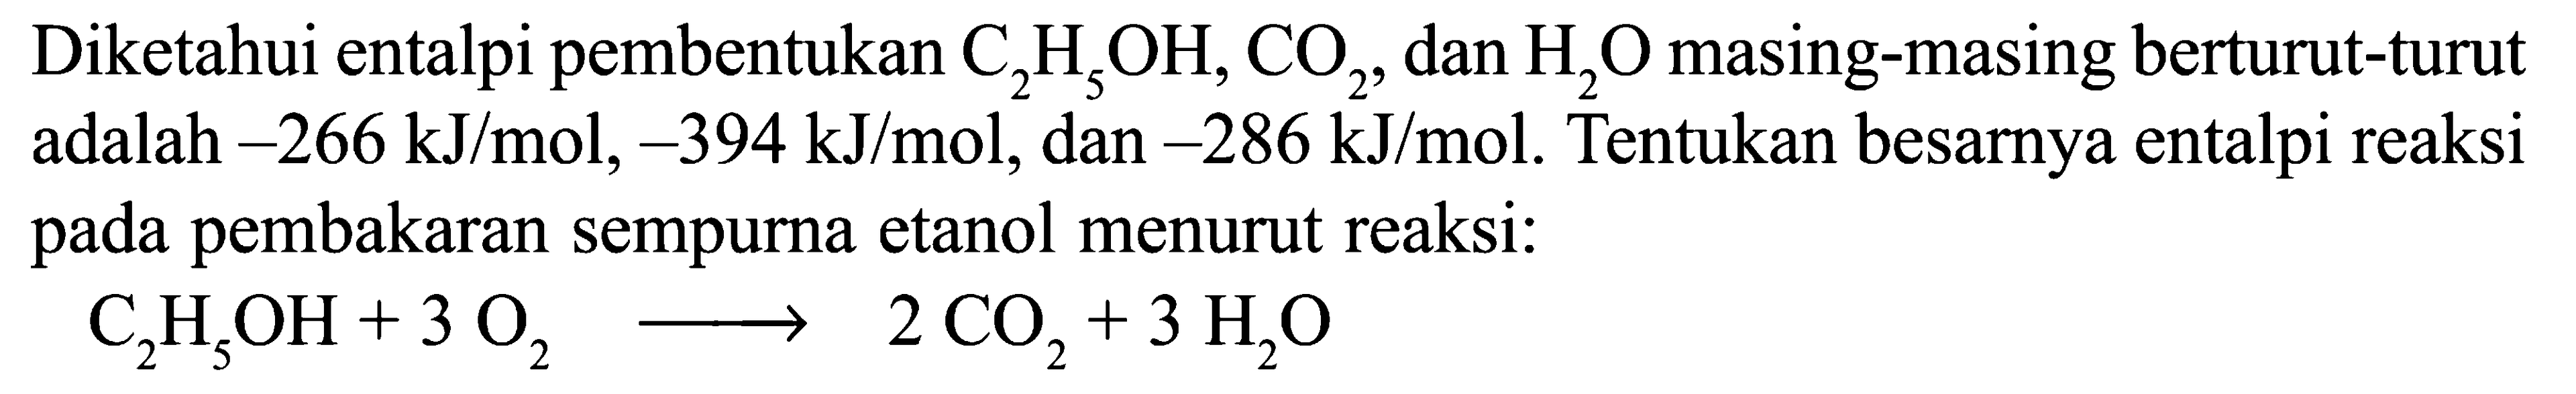 Diketahui entalpi pembentukan C2H5OH, CO2, dan H2O masing-masing berturut-turut adalah -266 kJ/mol, -394 kJ/mol, dan -286 kJ/mol. Tentukan besarnya entalpi reaksi pada pembakaran sempurna etanol menurut reaksi: C2H5OH + 3 O2 -> 2 CO2 + 3 H2O